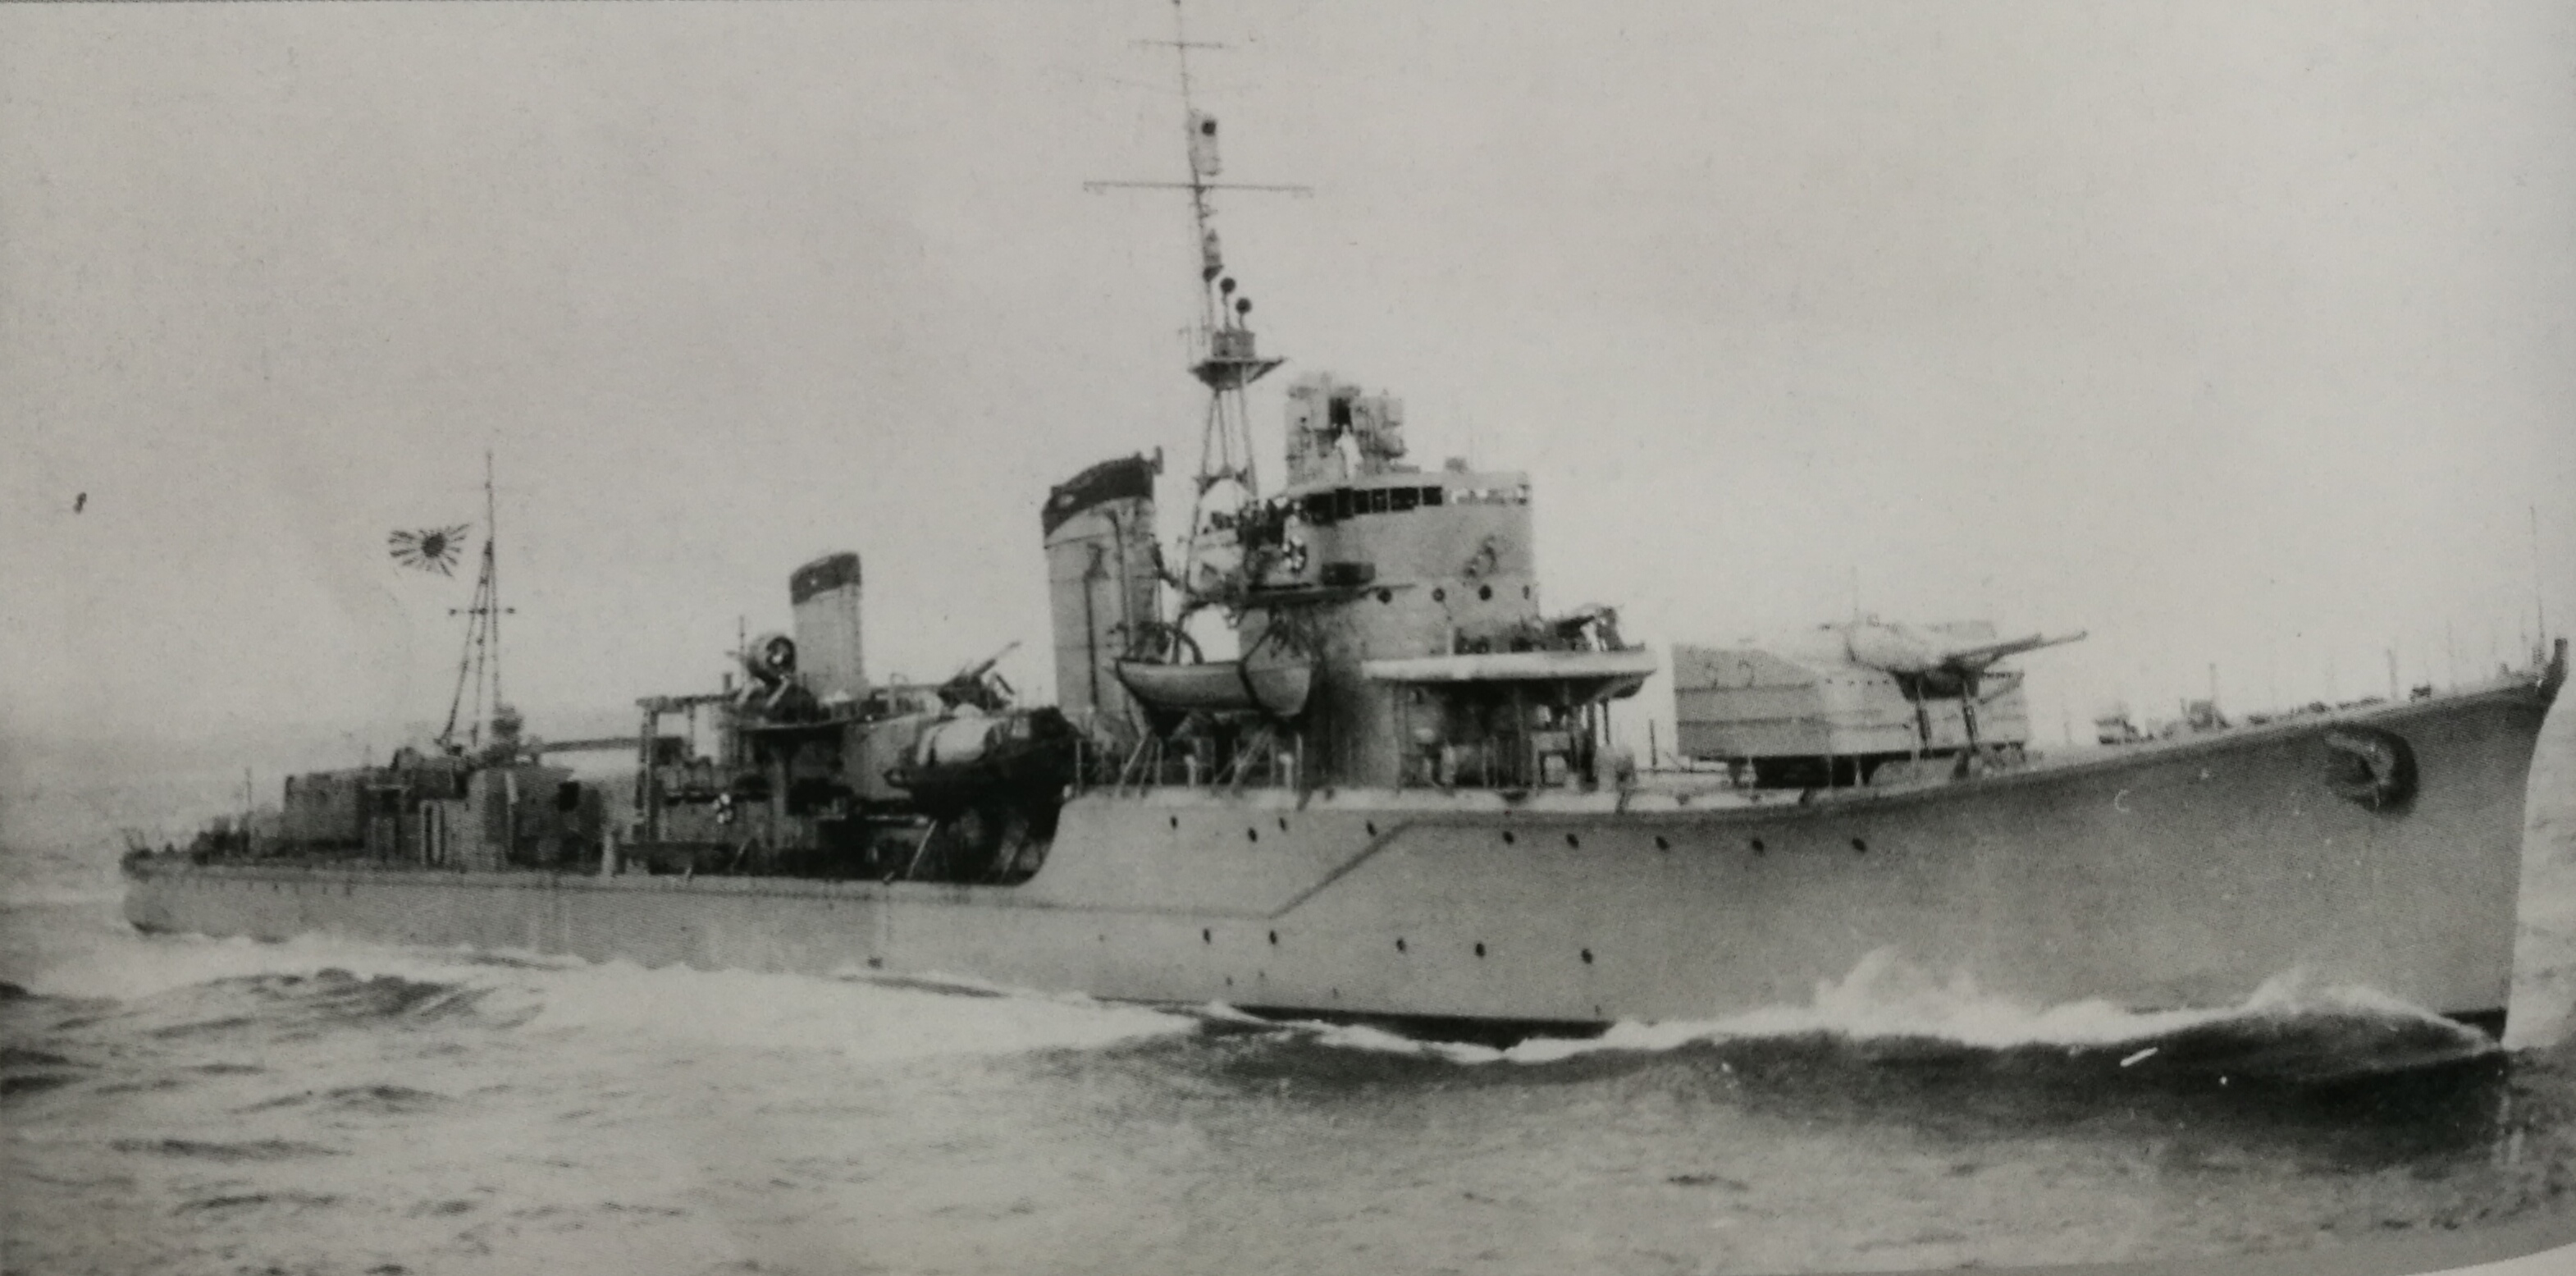 1943年11月完成修理工作離開浦賀船渠的春雨